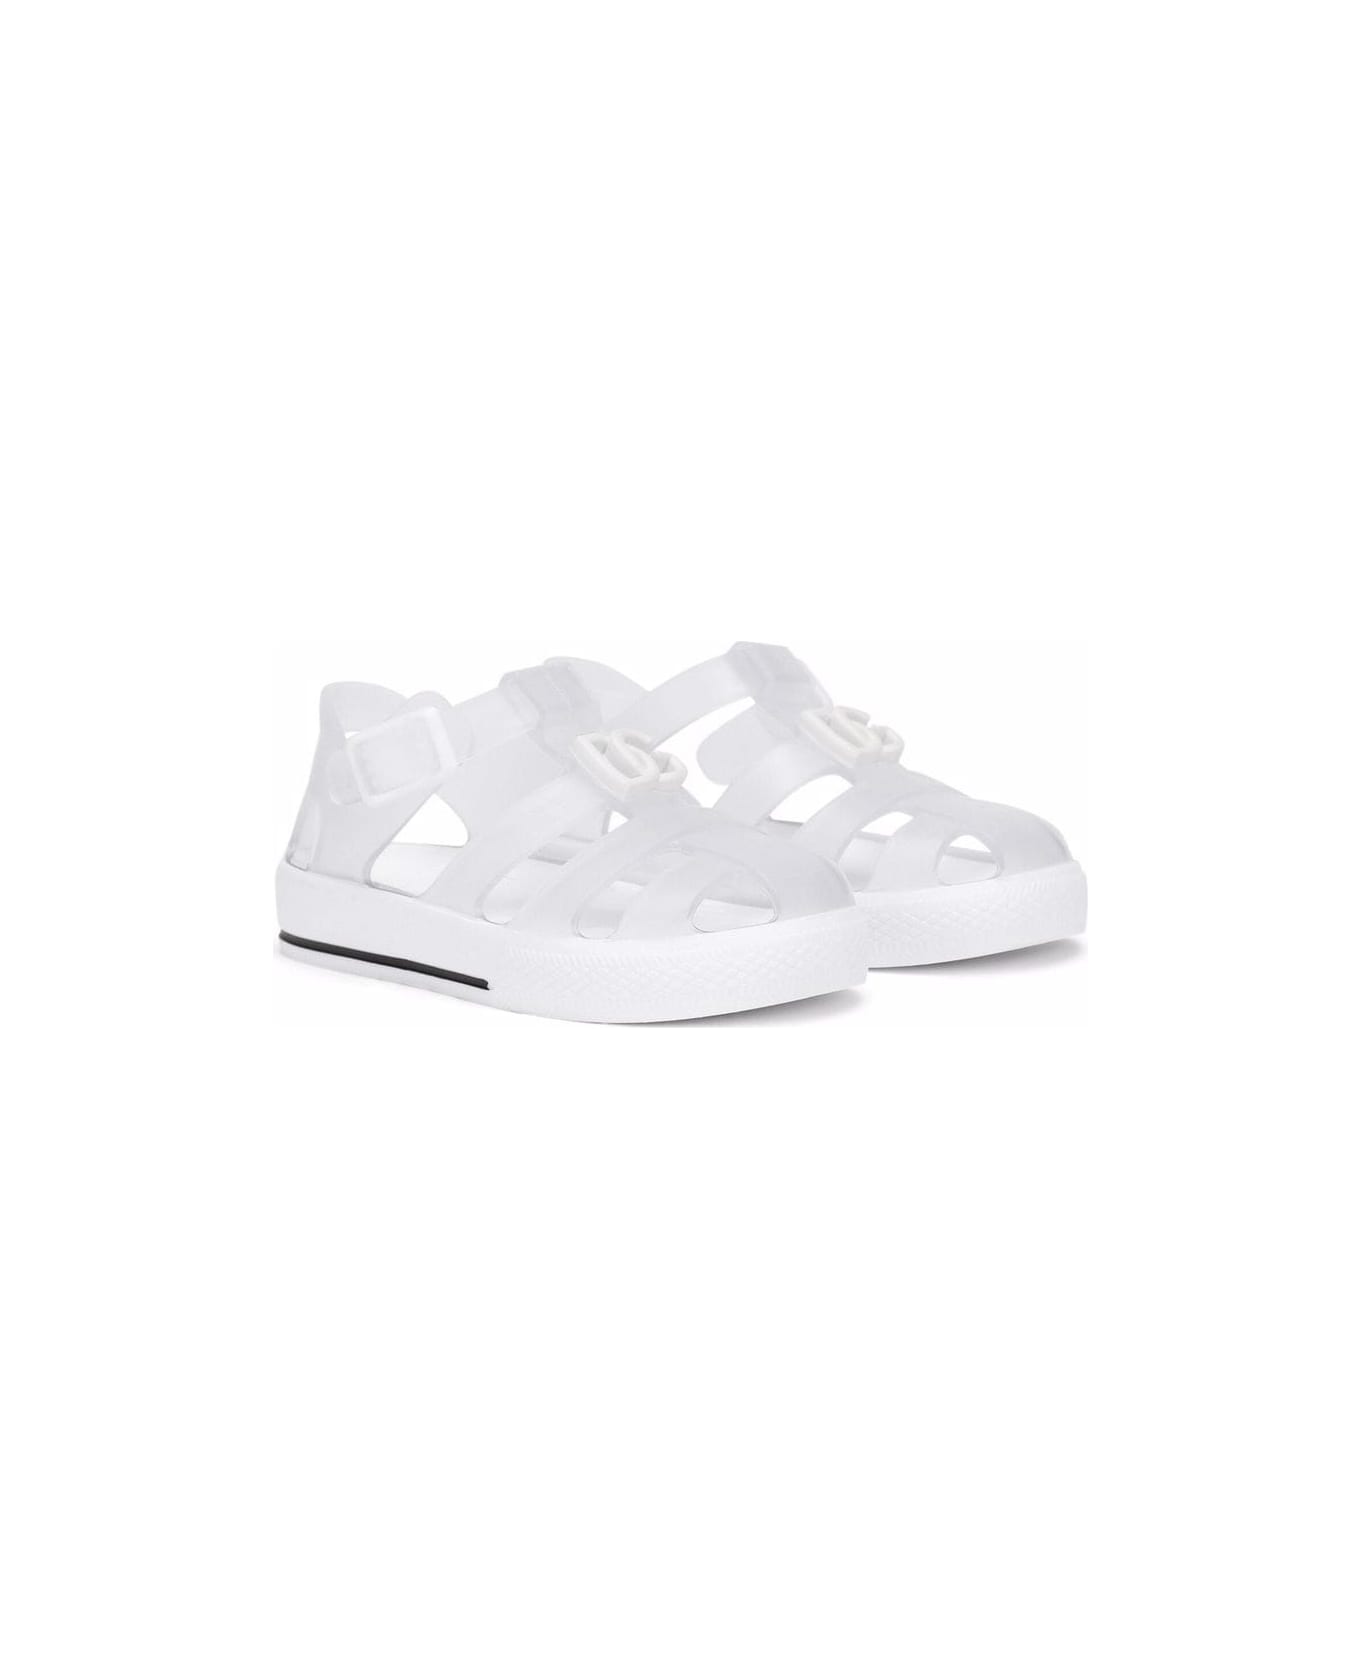 Dolce & Gabbana White Rubber Sandals - White